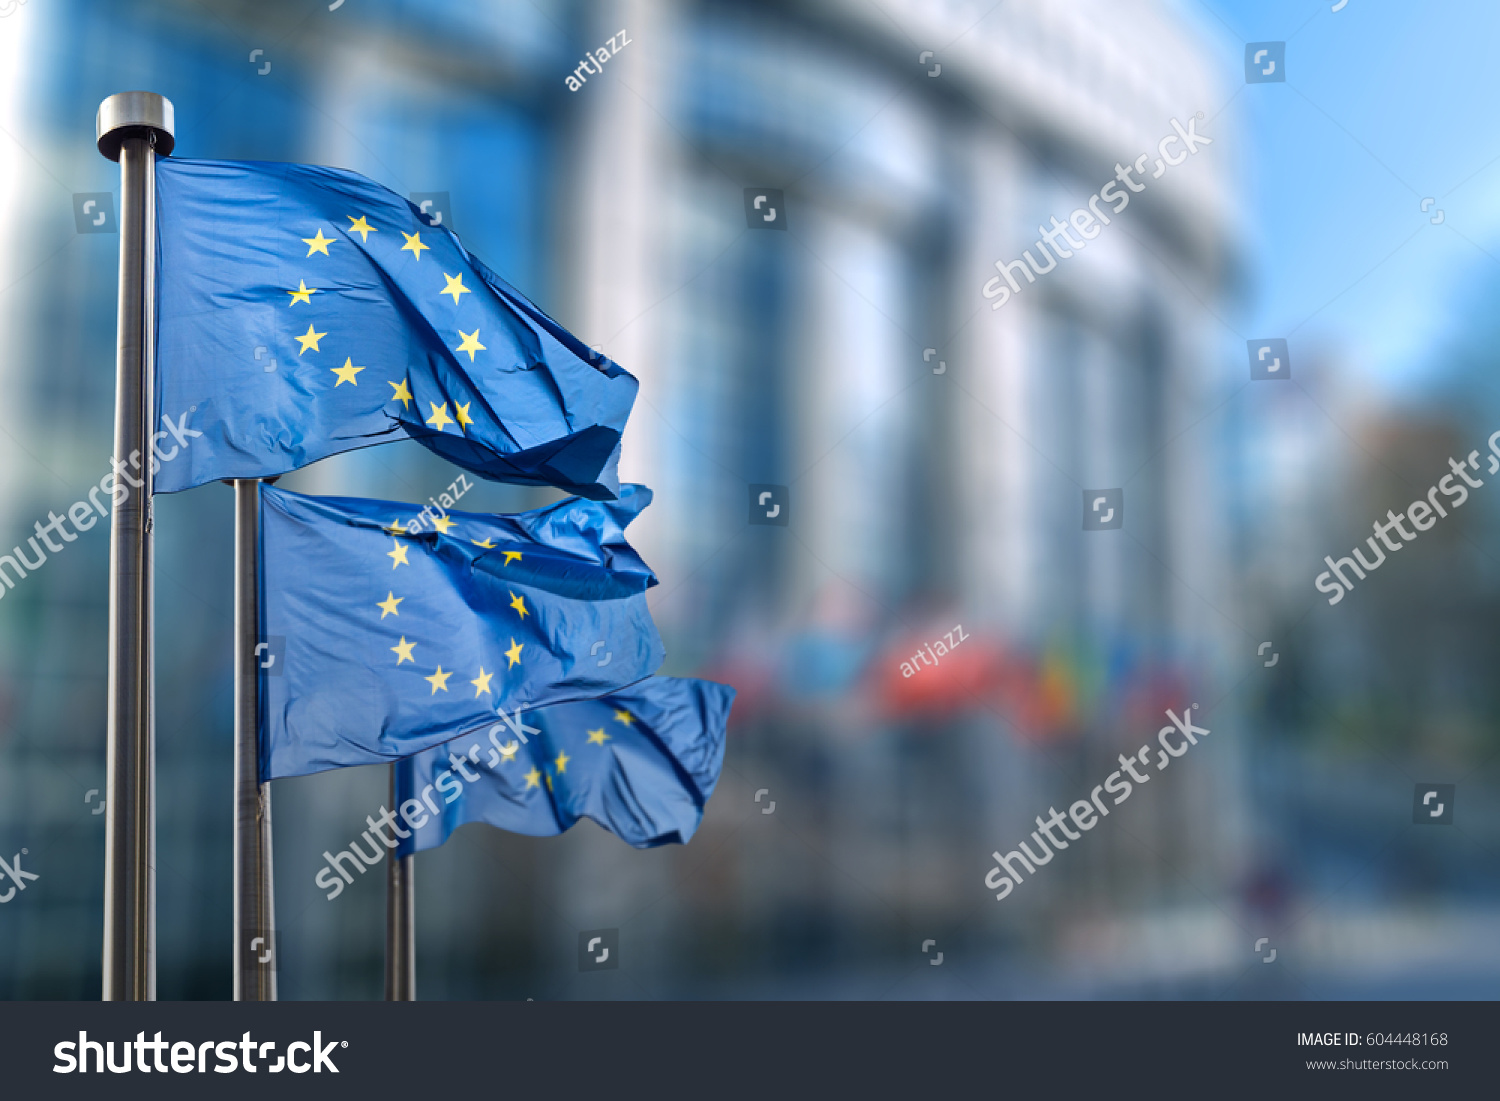 European union flag #604448168